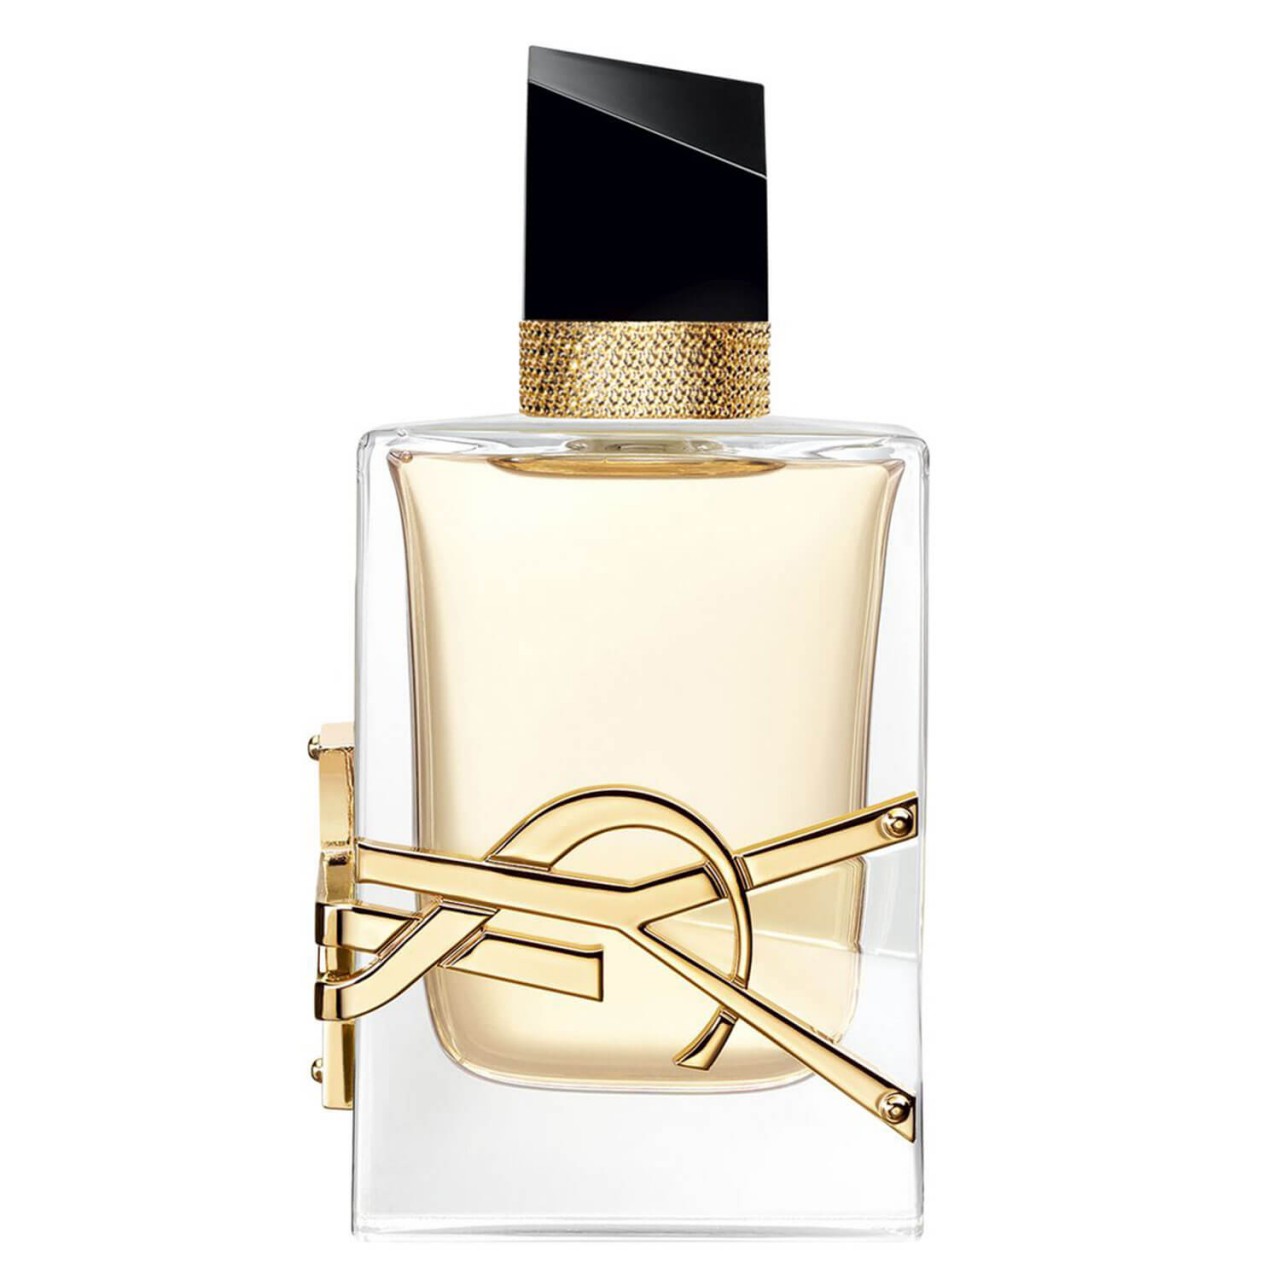 Libre - Eau de Parfum von Yves Saint Laurent